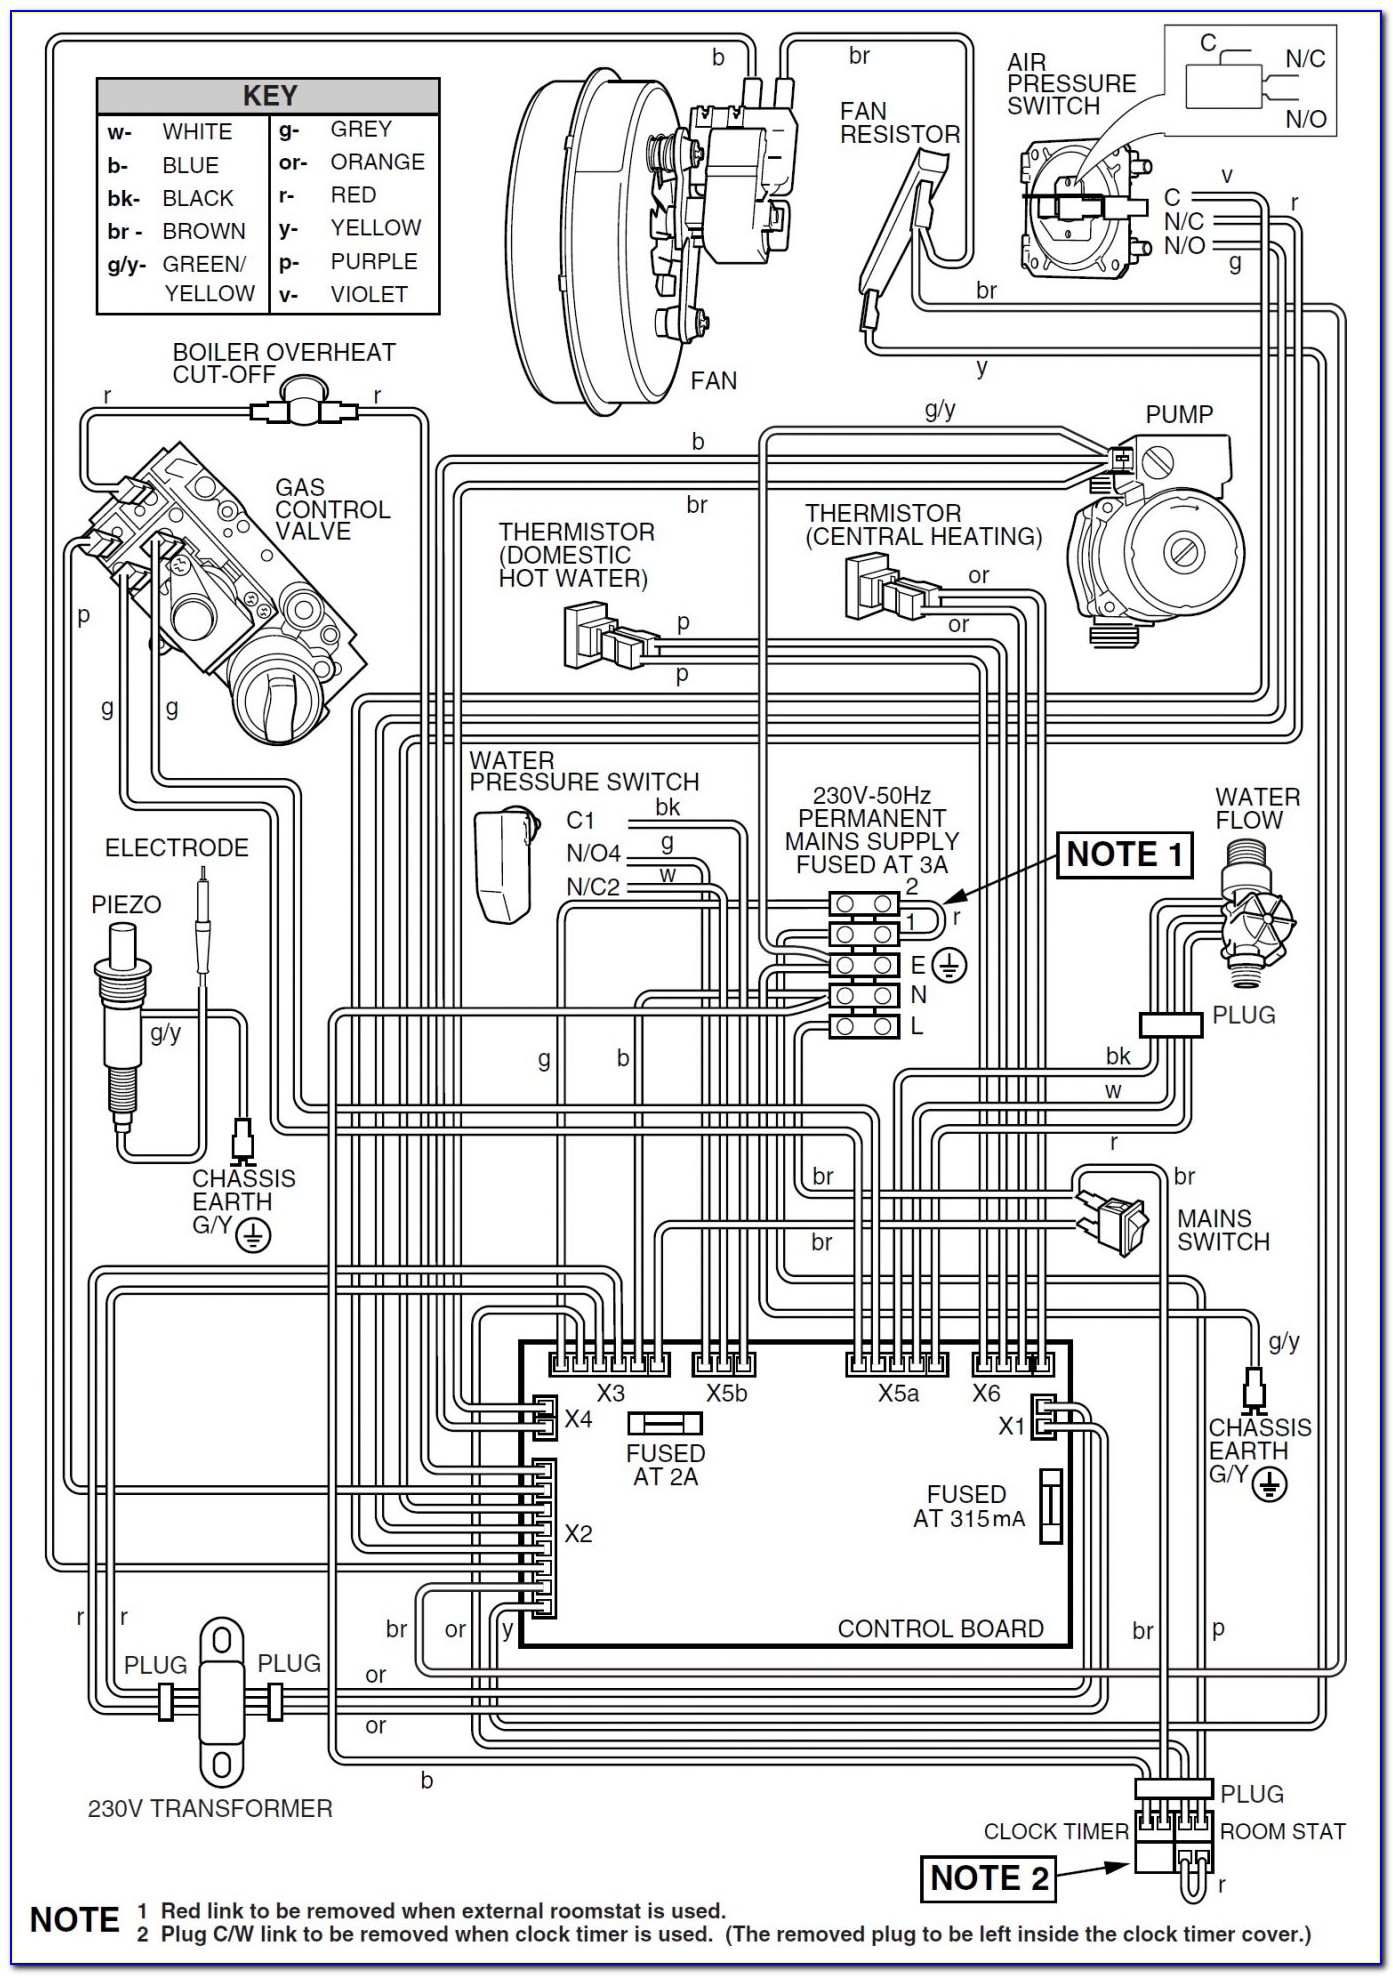 Beckett Oil Furnace Wiring Diagram